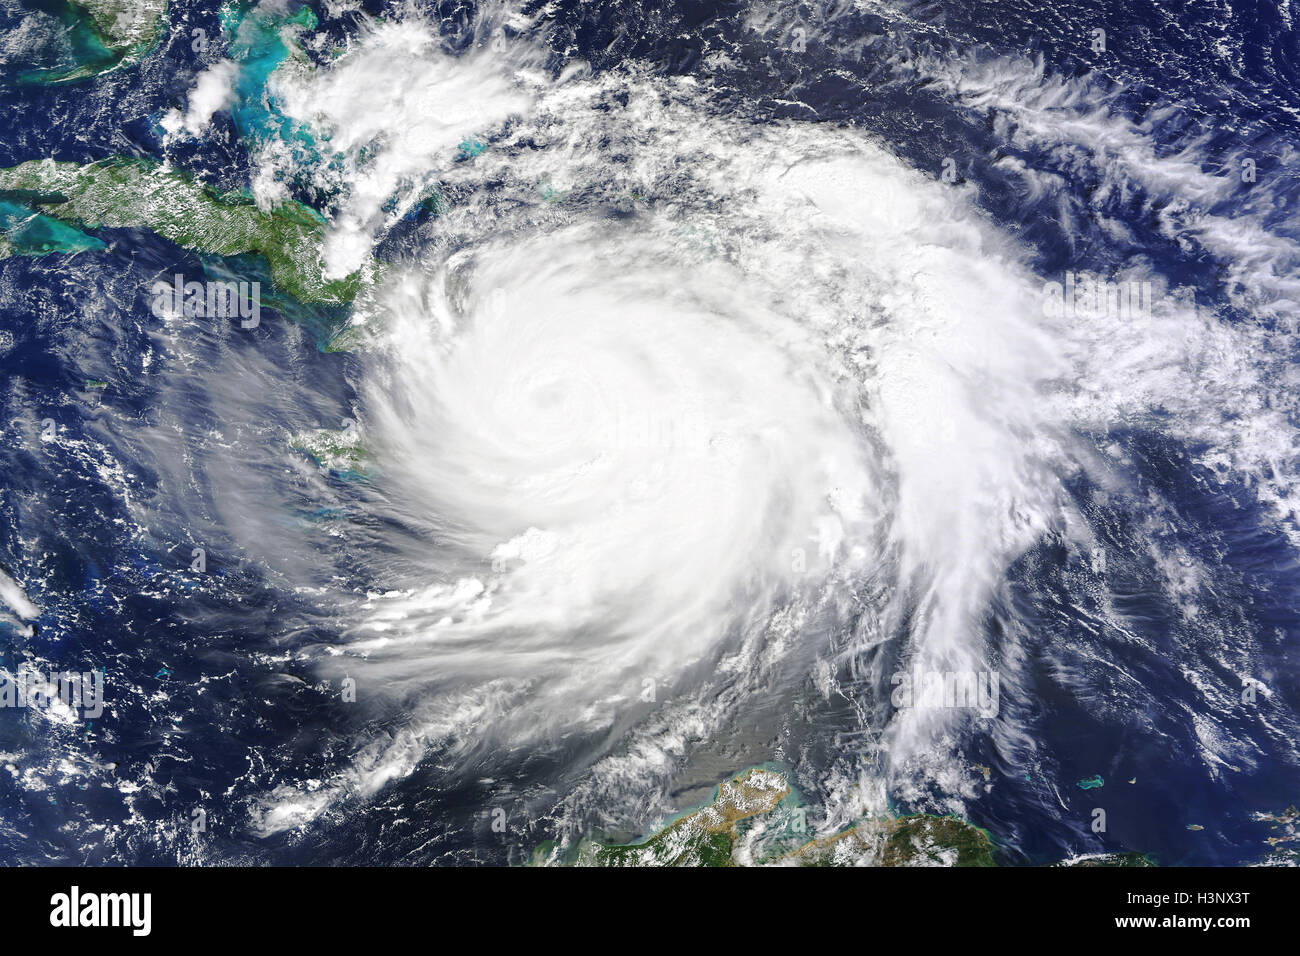 Hurrikan-Matthew ist über die Insel Hispaniola, Haiti und der Dominikanischen Republik, verdeckt durch den Sturm auf Dienstag, 4. Oktober 2016 gesehen. Kuba und die Spitze des südlichen Florida sind in der oberen linken Ecke gesehen. (NASA/MODIS) Stockfoto